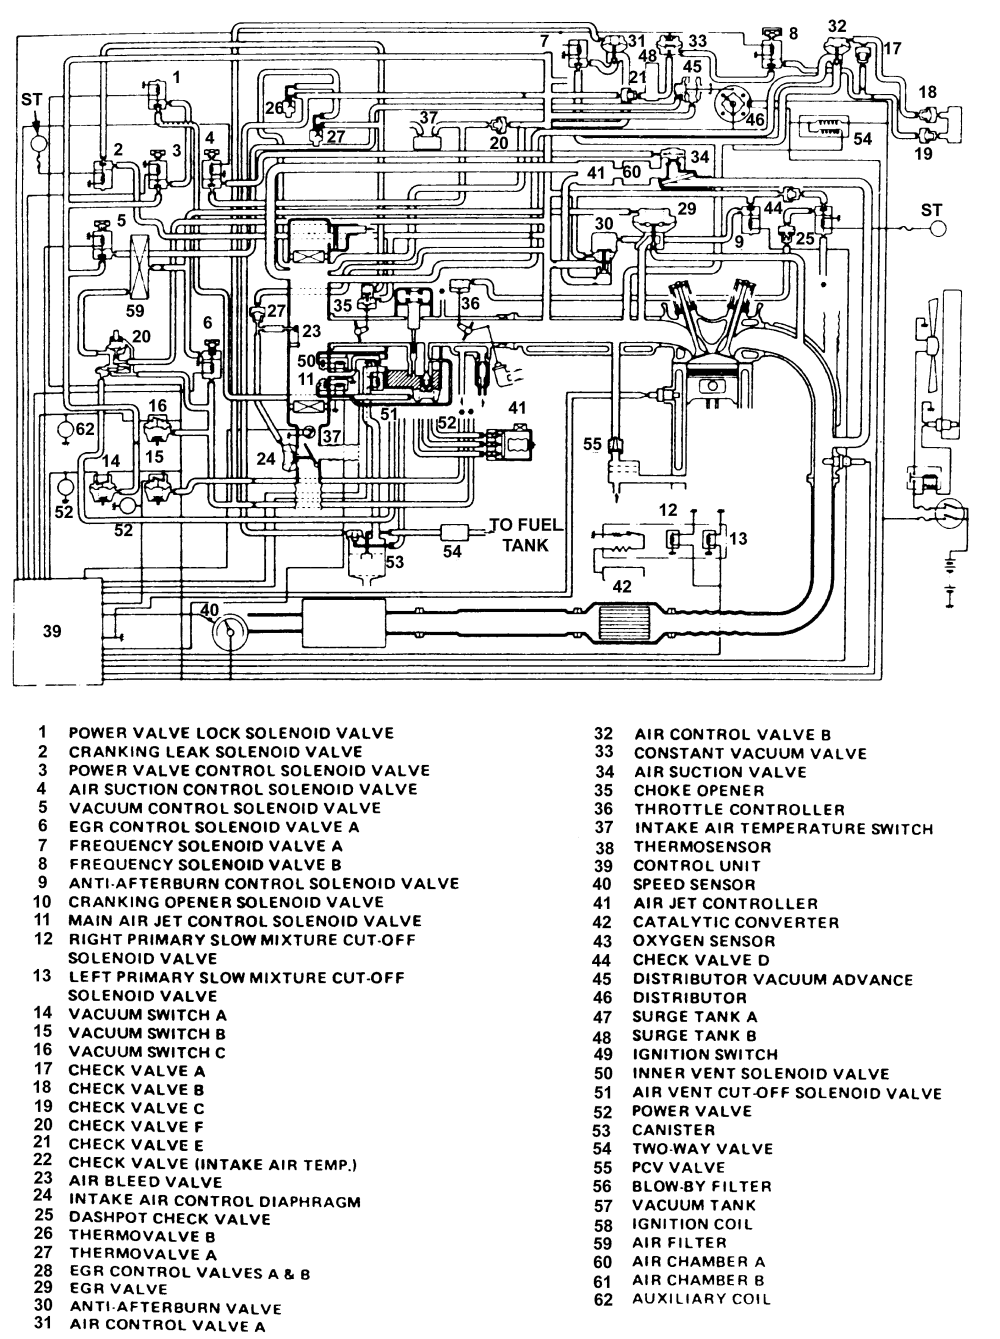 2000 GMC Sonoma Vacuum Hose Routing Diagram